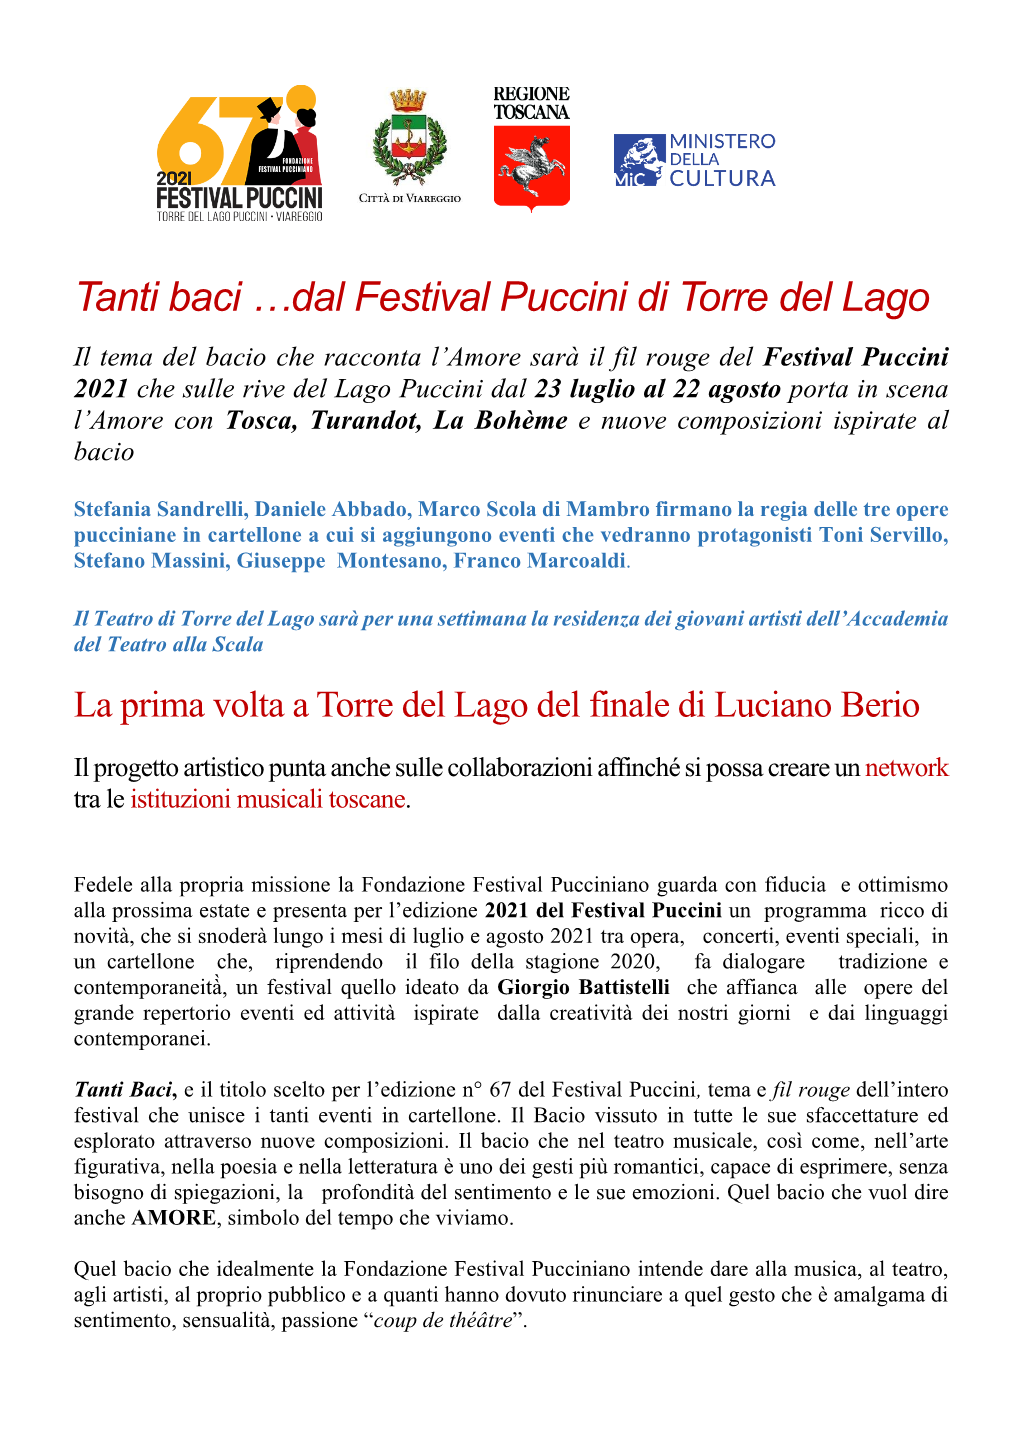 Dal Festival Puccini Di Torre Del Lago